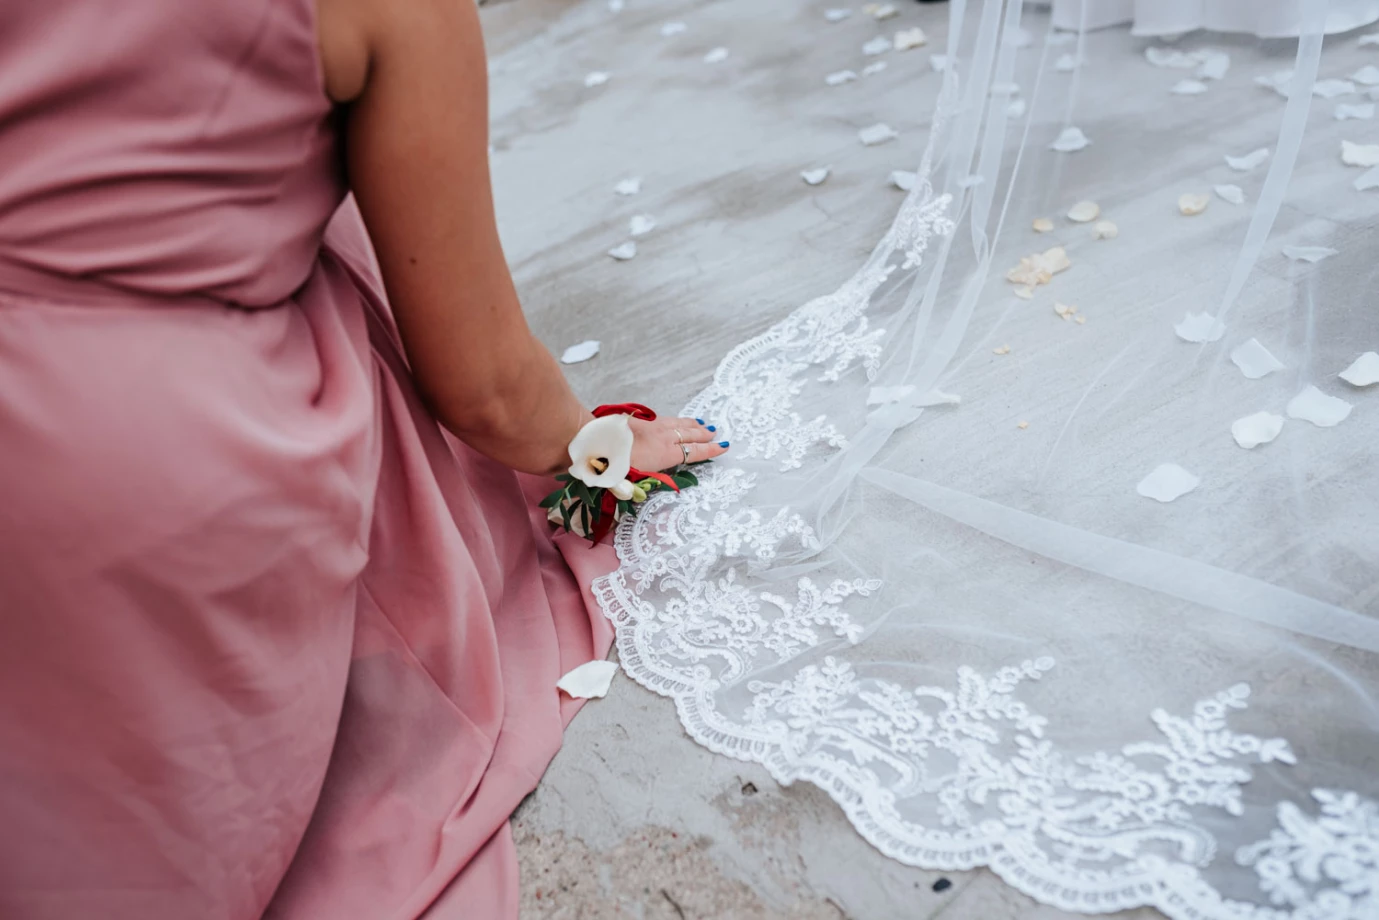 fotograf lodz memolove portfolio zdjecia slubne inspiracje wesele plener slubny sesja slubna